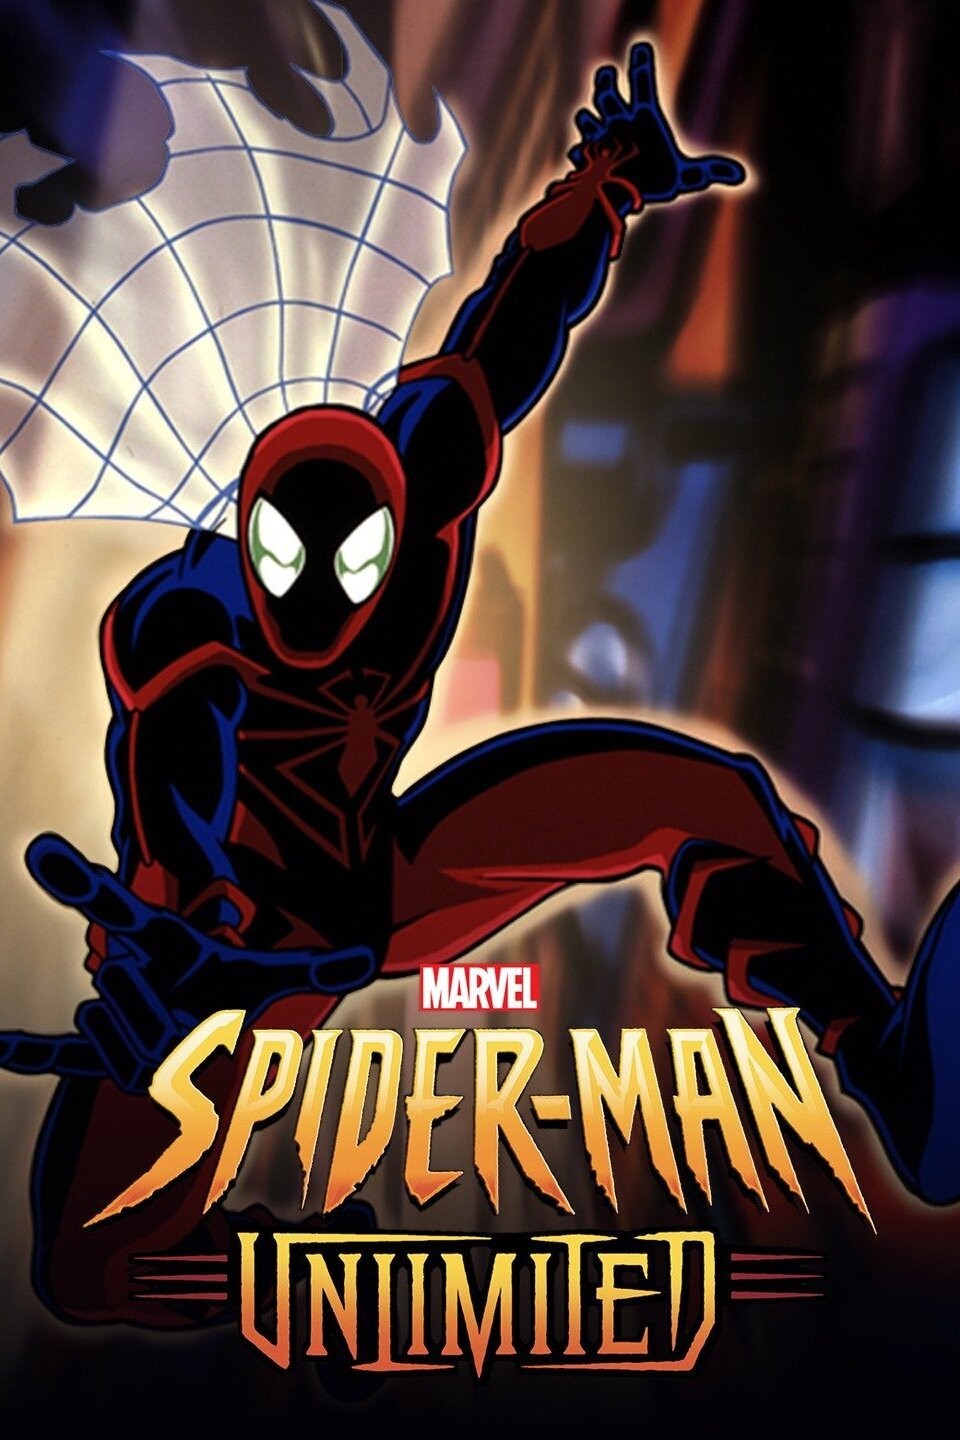 Original Suit - The Amazing Spider-Man 2 Guide - IGN